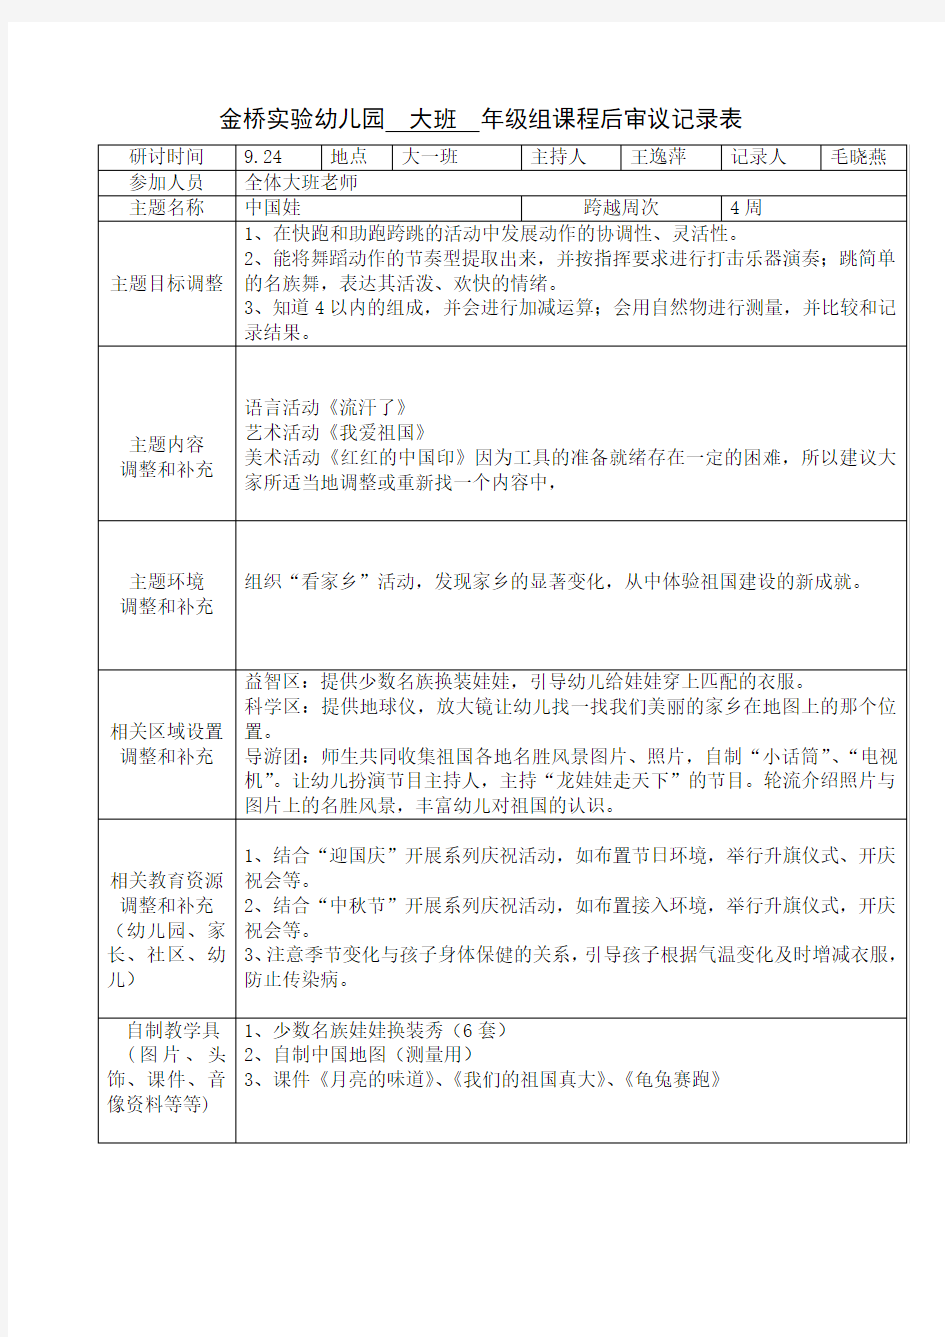 第二主题“中国娃”课程审议记录表